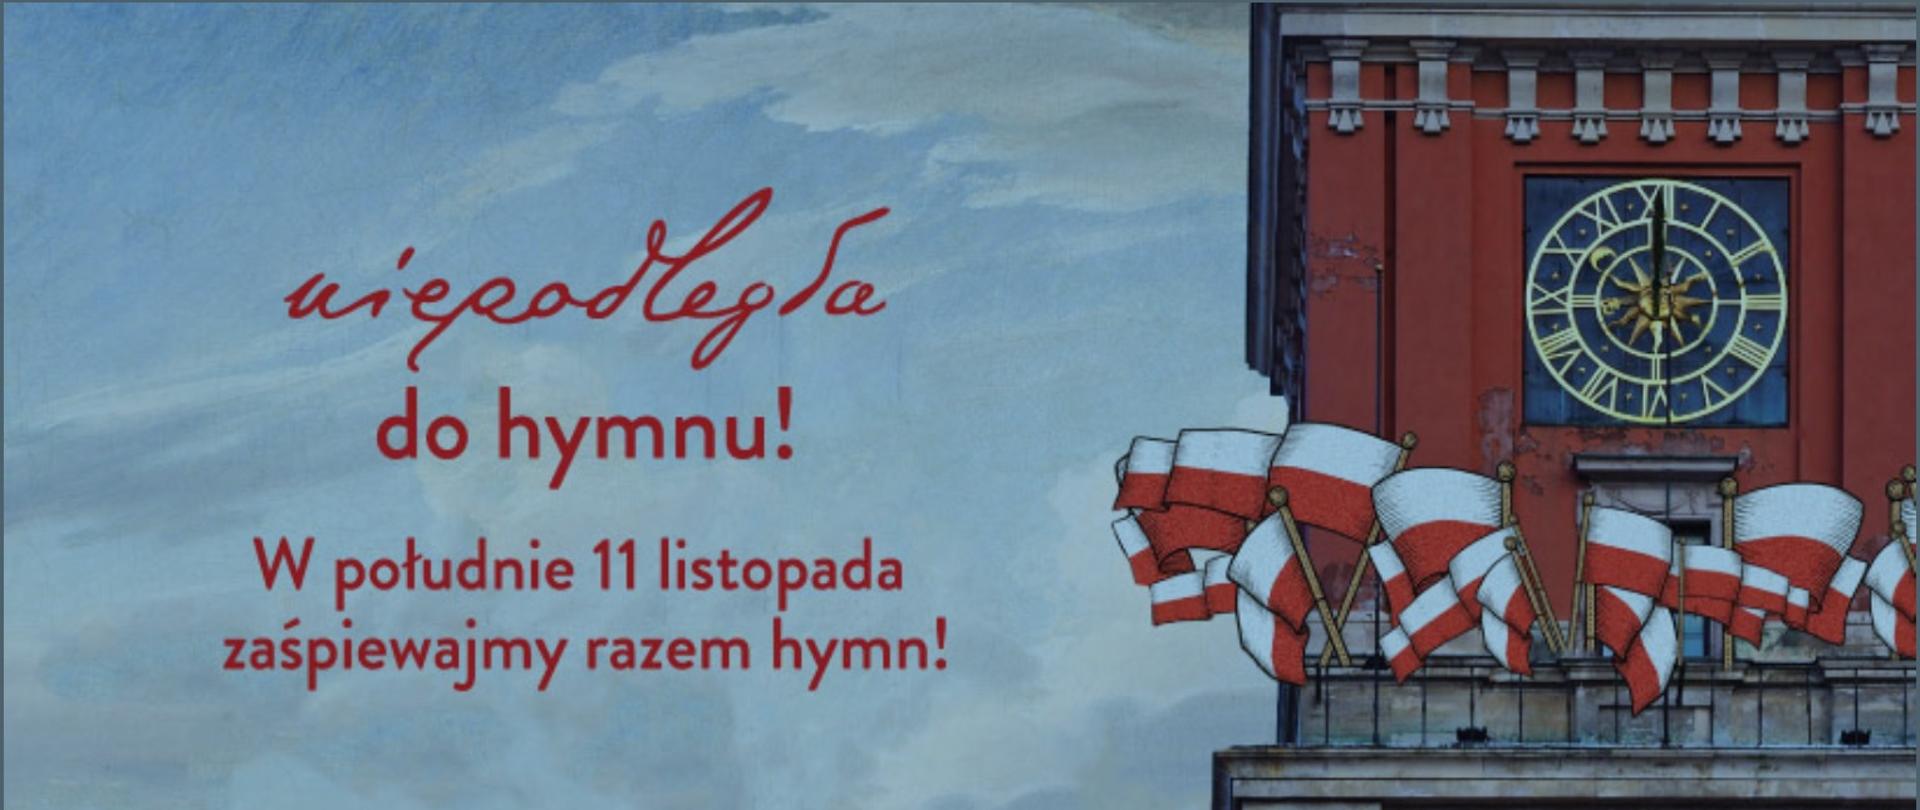 Logo akcji "Niepodległa do hymnu" 